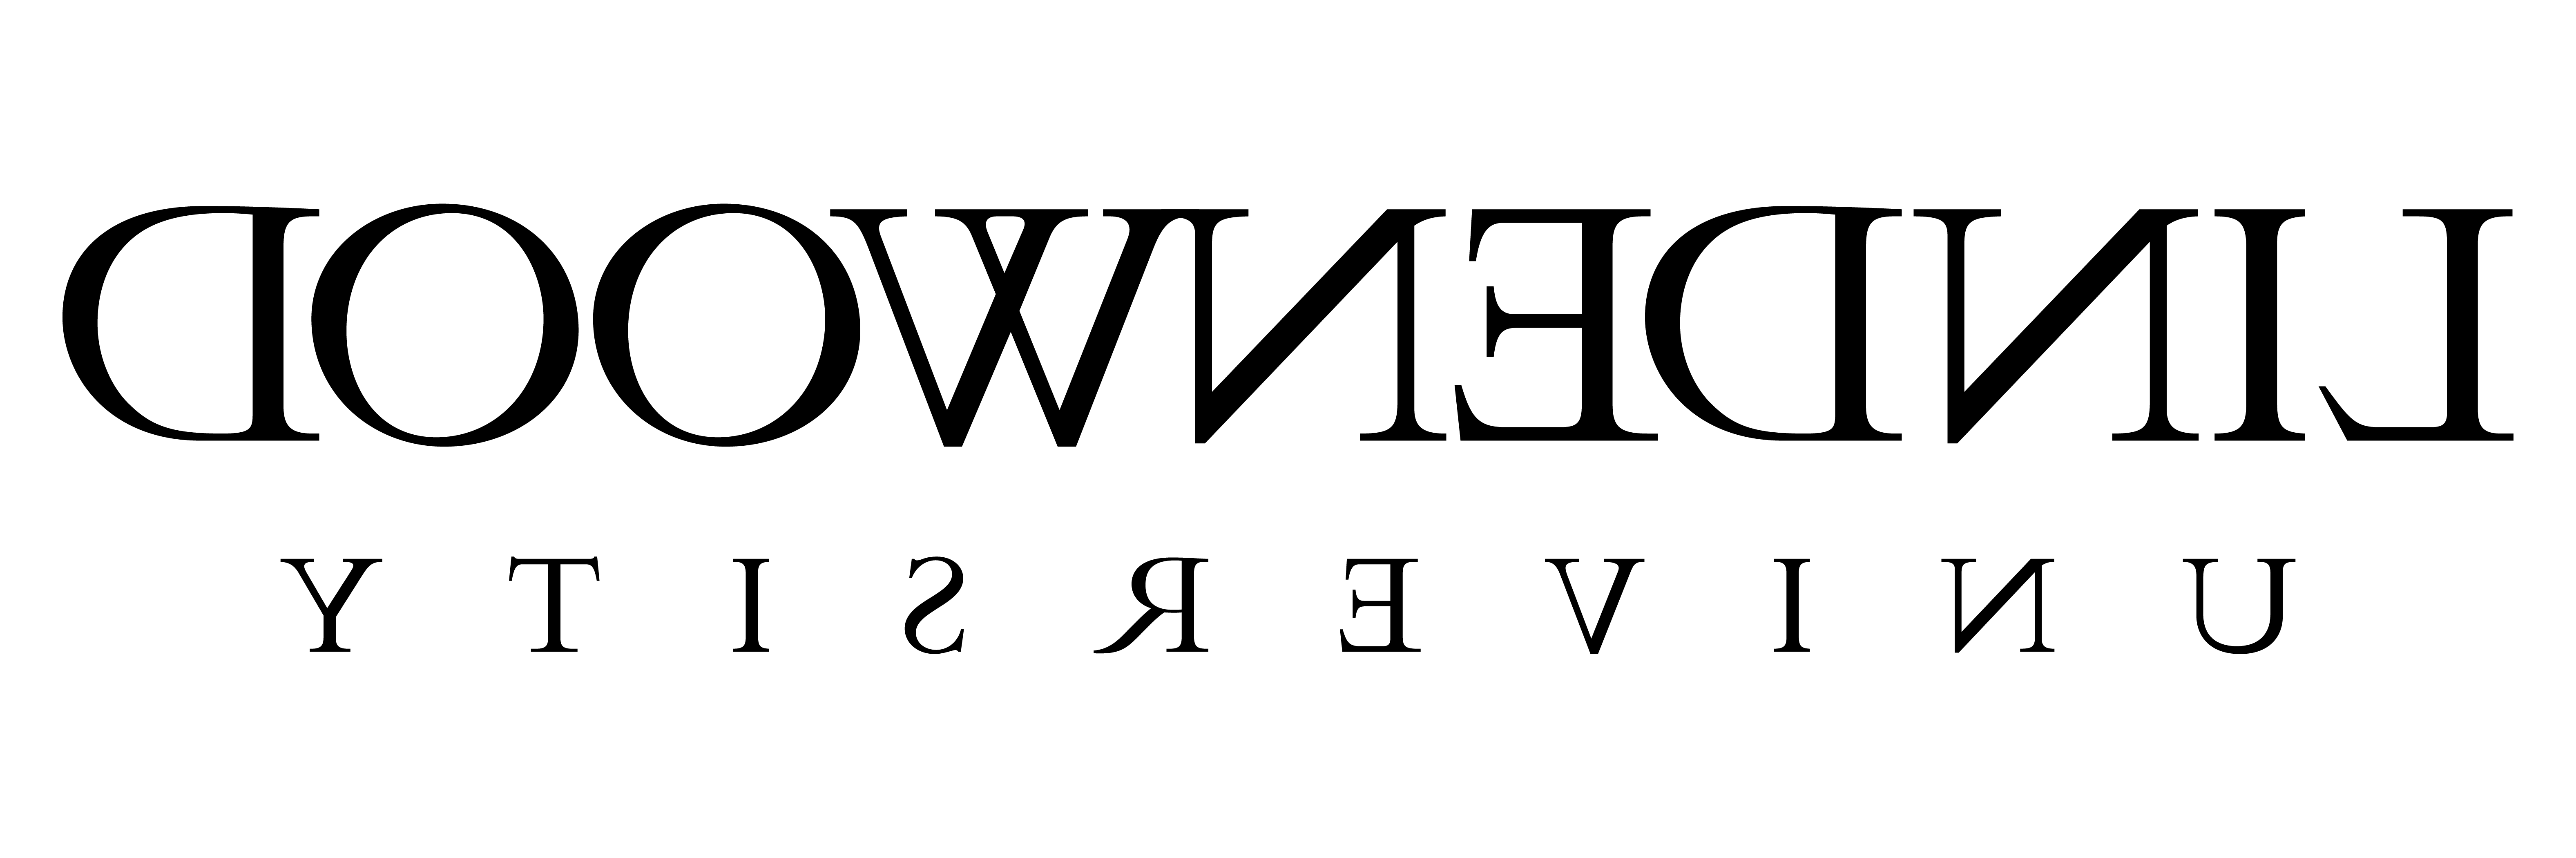 Lindenwood University - Primary Logo - Black